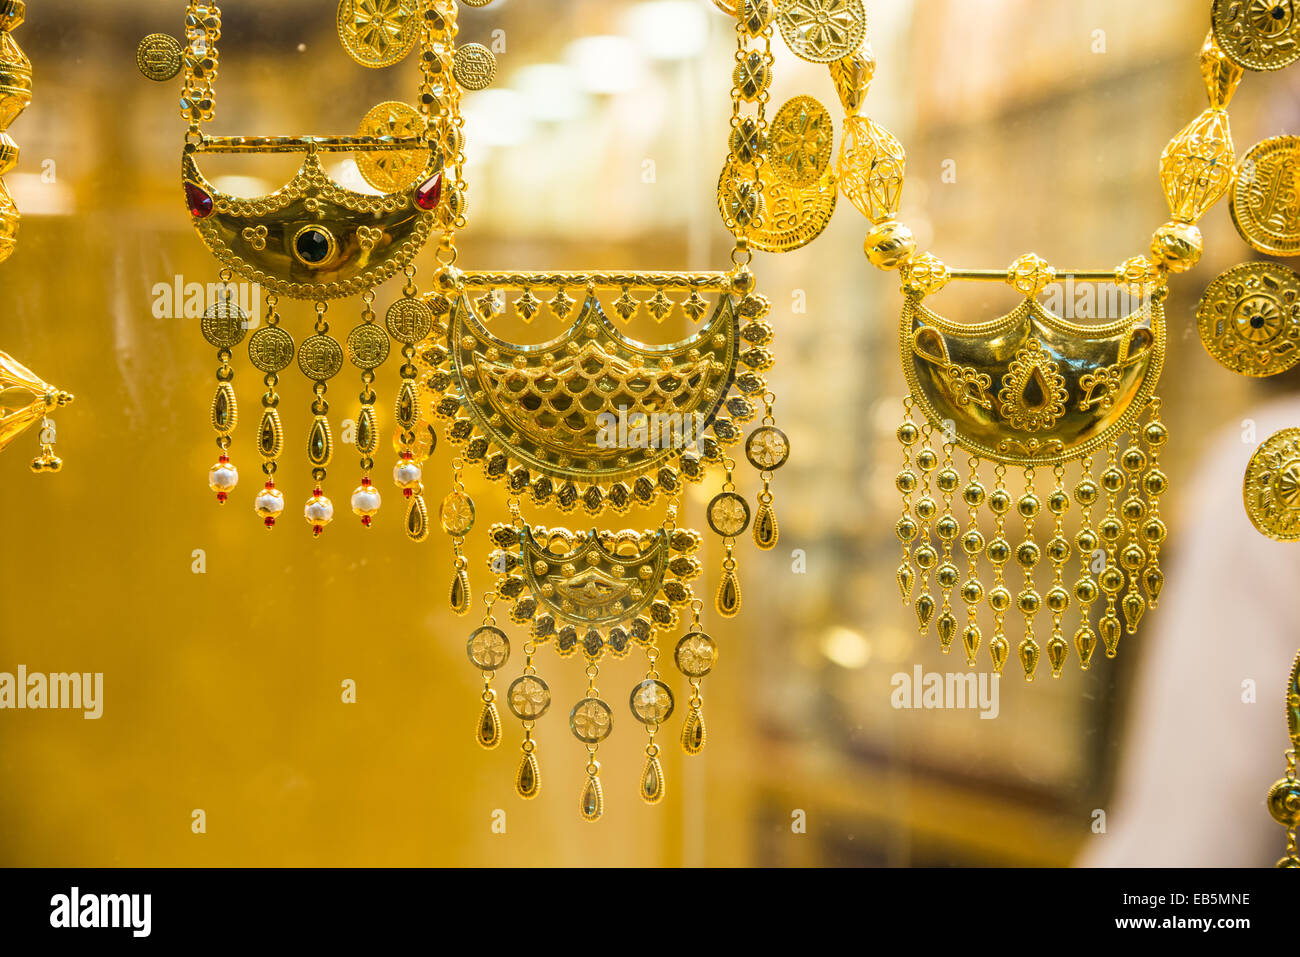 Gold Schmuck in einem Speicher angezeigt. Muttrah Souk, Muscat, Oman  Stockfotografie - Alamy